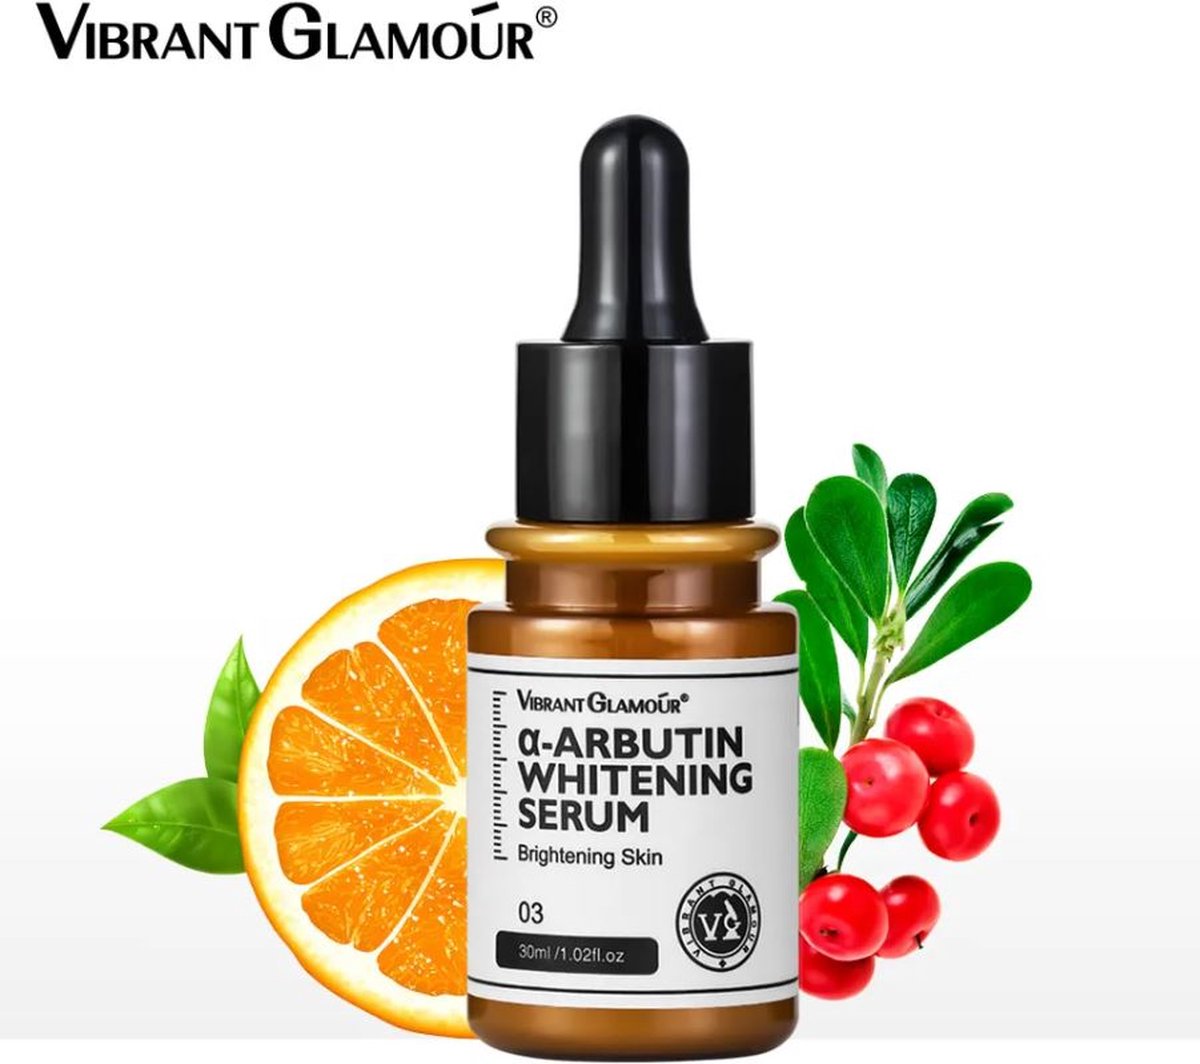 VIBRANT GLAMOUR - Niacinamide Serum - A-arbutine - Rijk aan Niacinamide - Vitamine C - Verfrissend en Zacht Huidgevoel - Effectief te Hydrateren